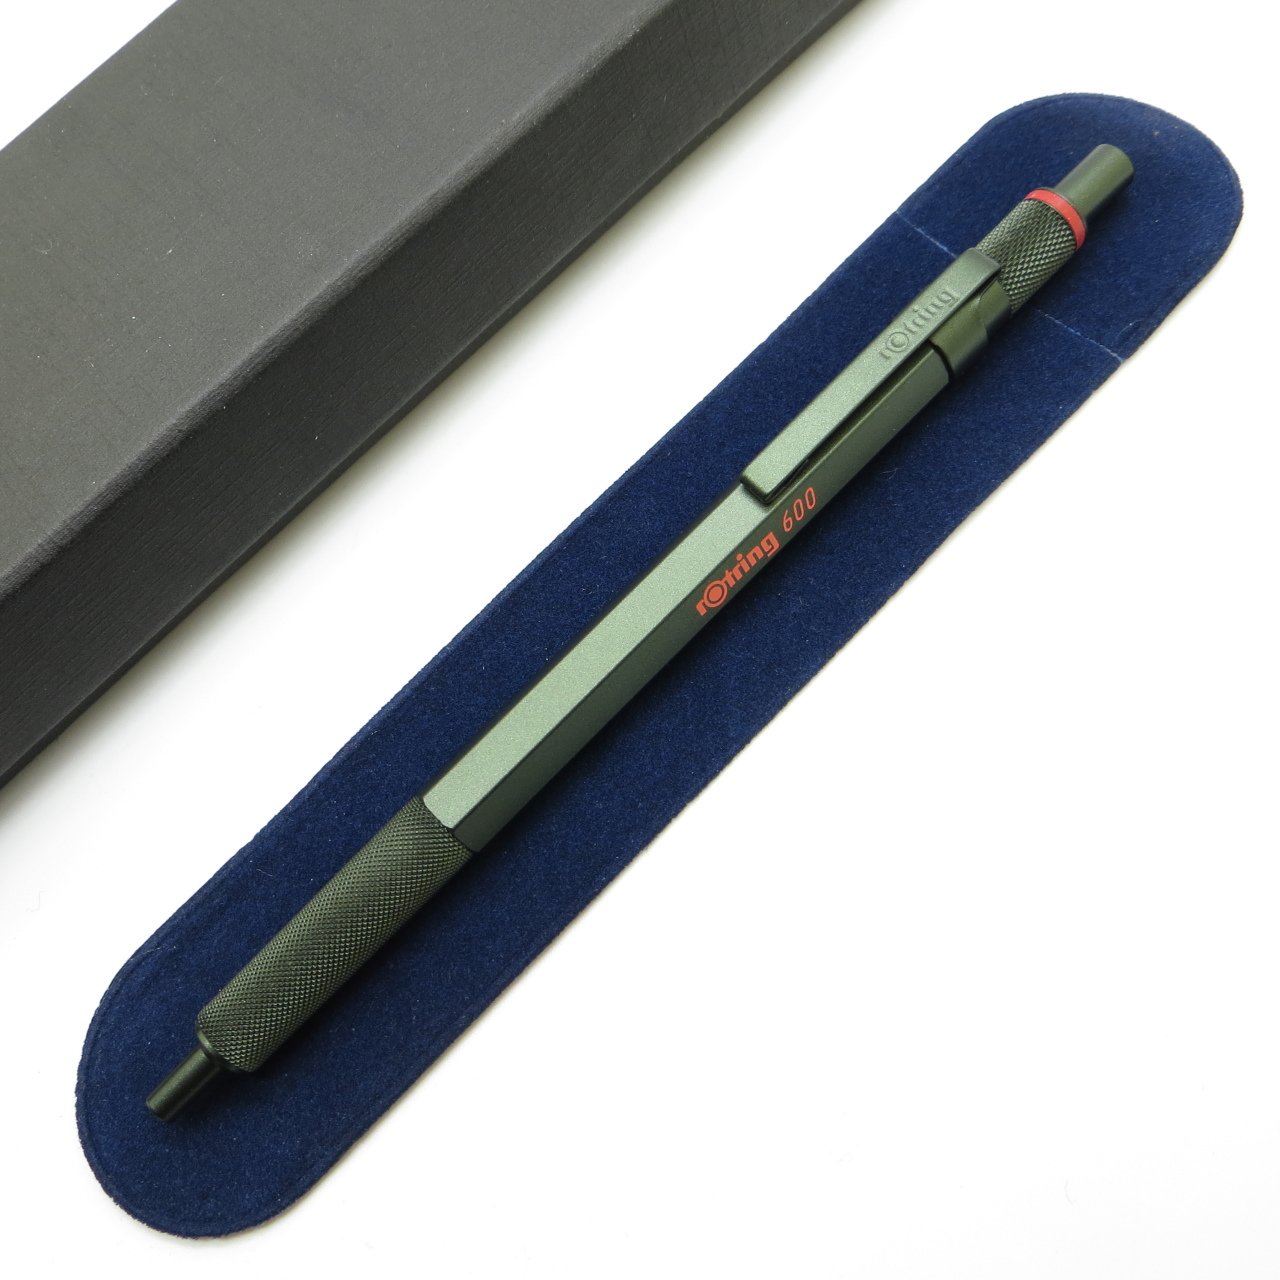 Rotring 600 Yeşil Tükenmez Kalem | İsme Özel Kalem